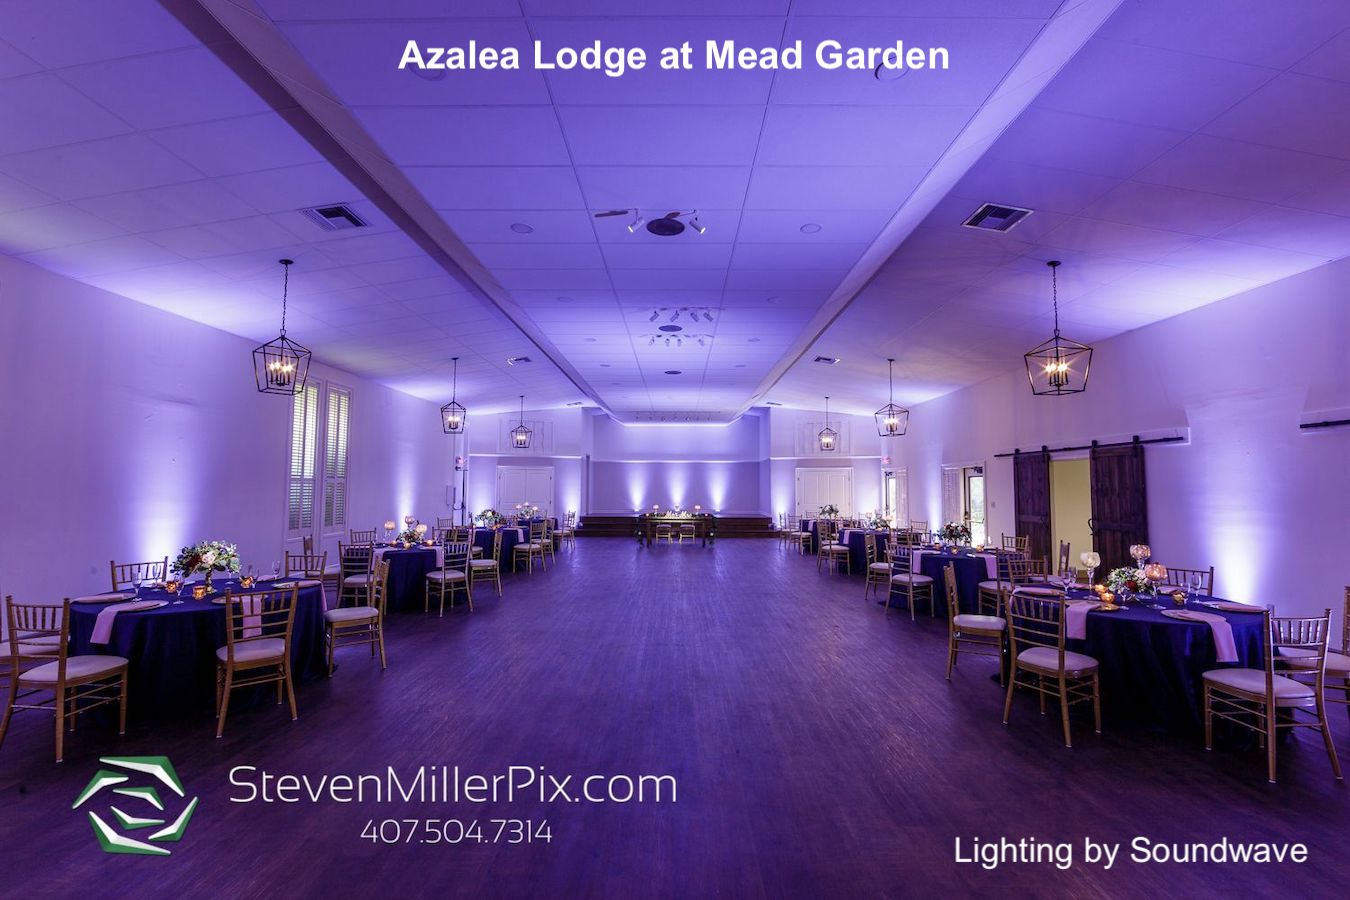 azalea lodge at mead garden - dubsdread catering - orlando wedding venue